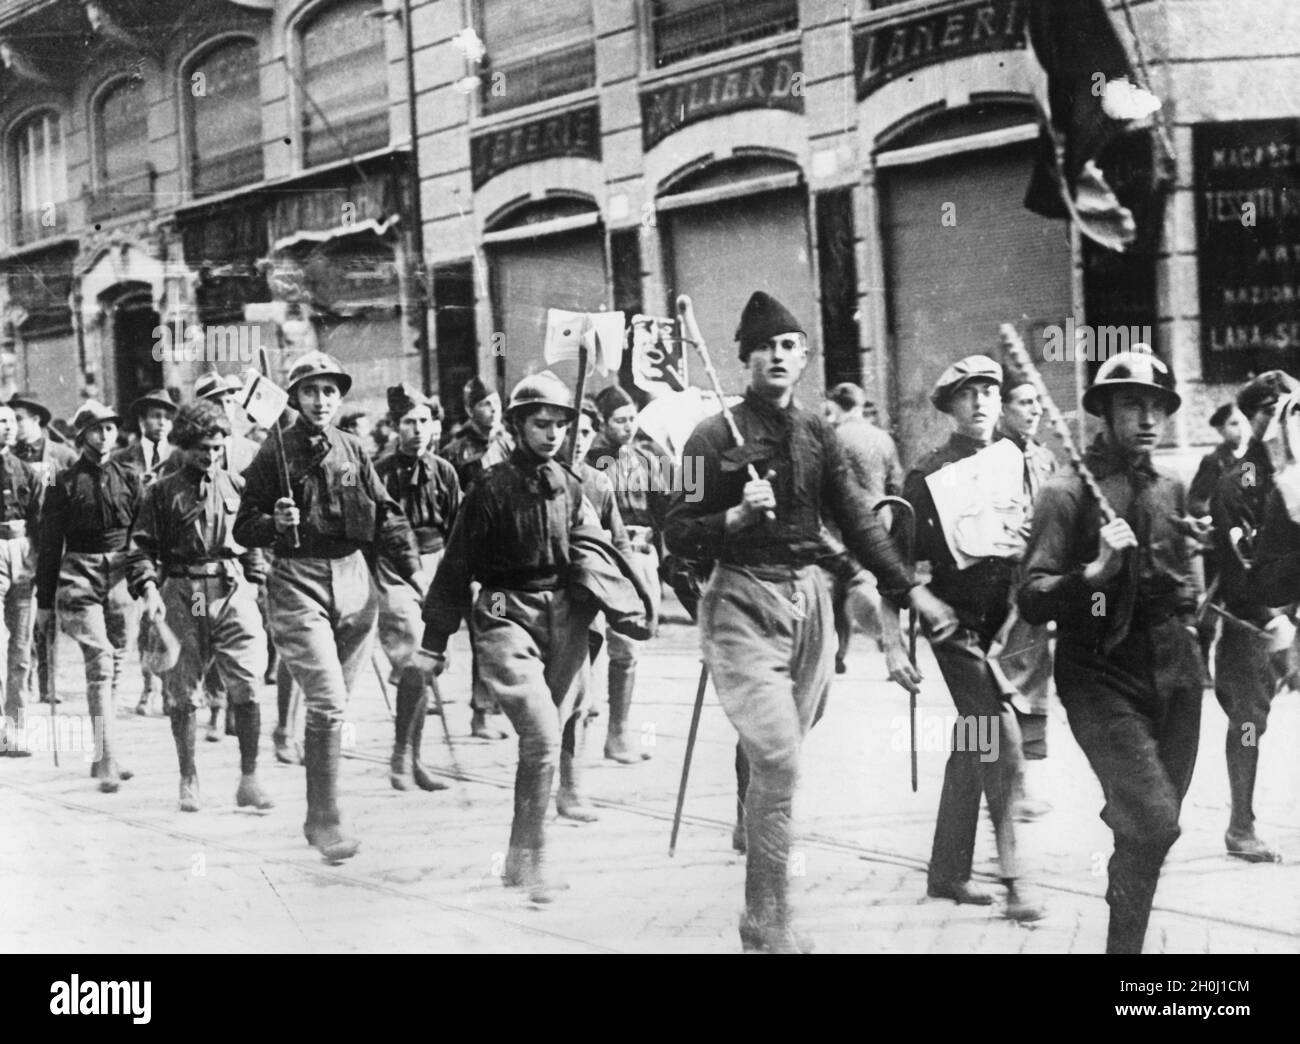 'Fascistas Blackshirts marchan a través de una calle en una ciudad italiana el 22 de octubre de 1922, armados con cascos y palos. La ''Marcha por Roma'' de Mussolini tuvo lugar a finales de octubre. [traducción automática]' Foto de stock